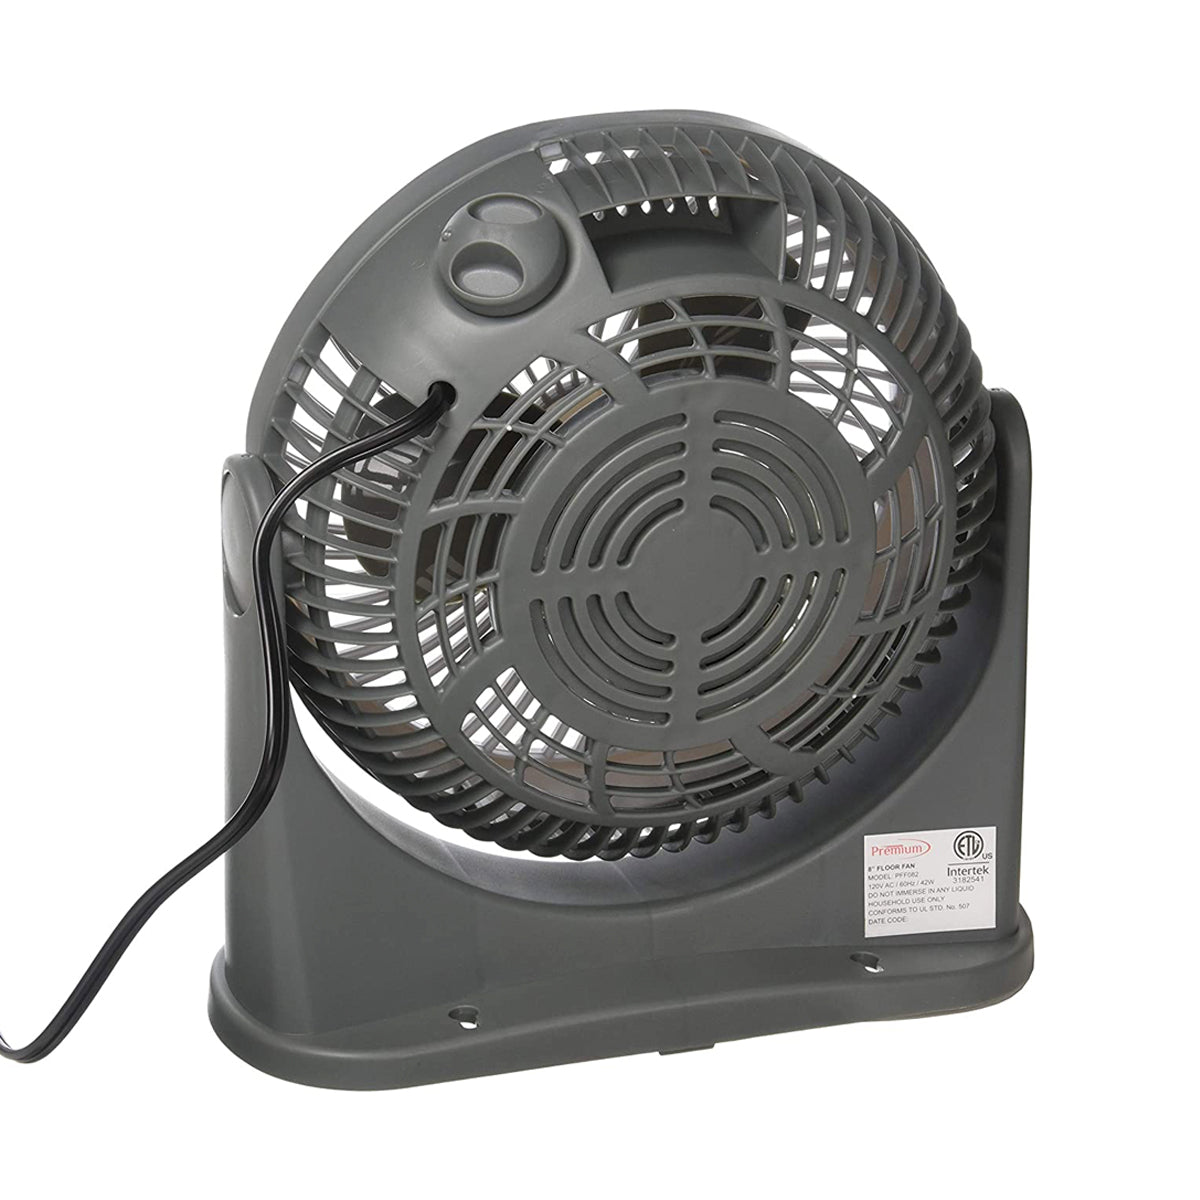 Ventilador  Piso 8” Premium